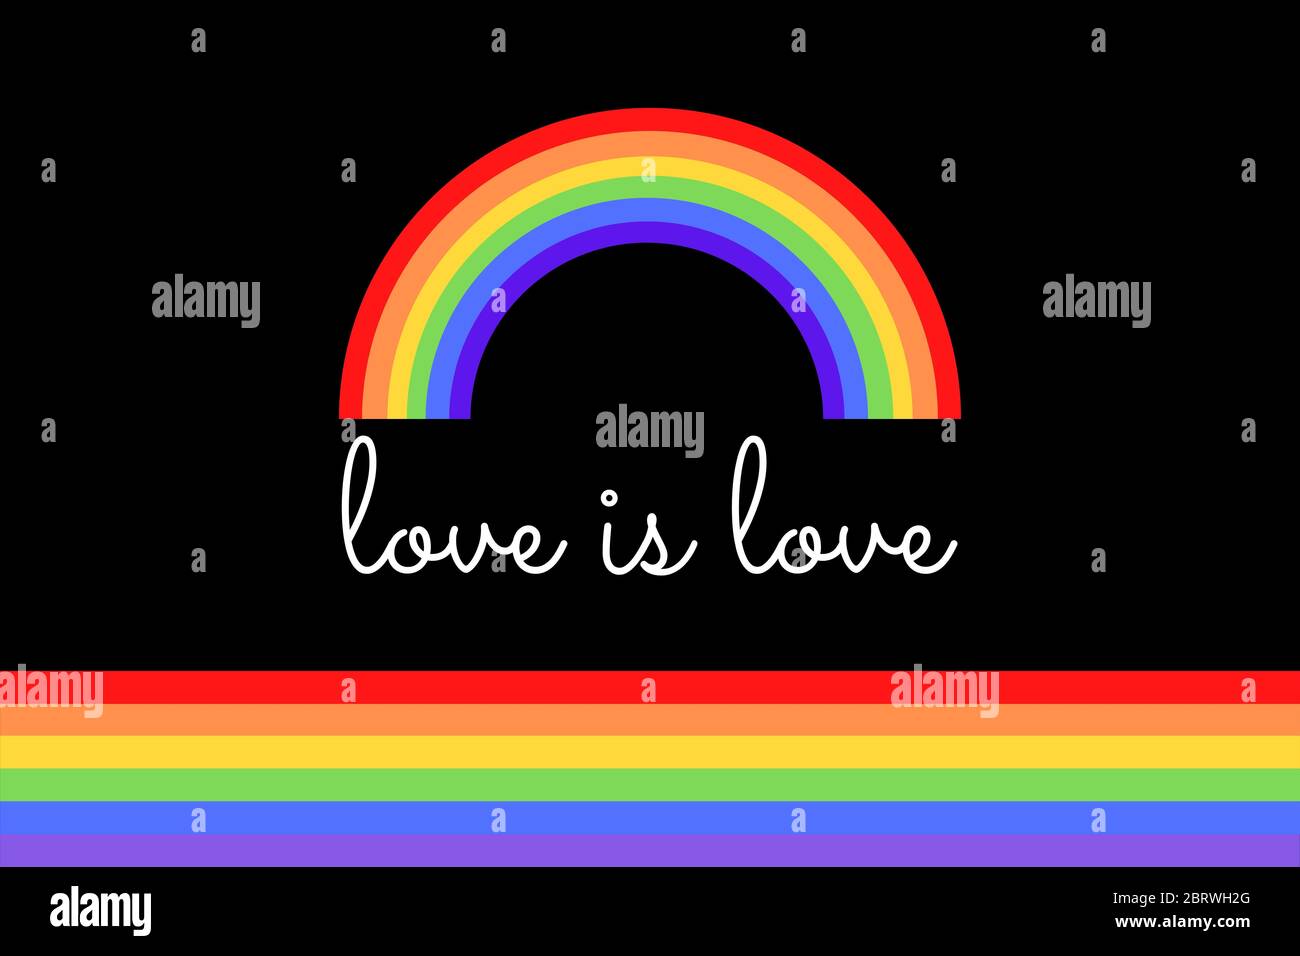 L'amour est l'illustration de l'amour sur le drapeau arc-en-ciel coloré ou le drapeau de fierté / bannière de l'organisation LGBTQ (lesbien, gay, bisexuel, transgenre et Queer). Fierté m Banque D'Images